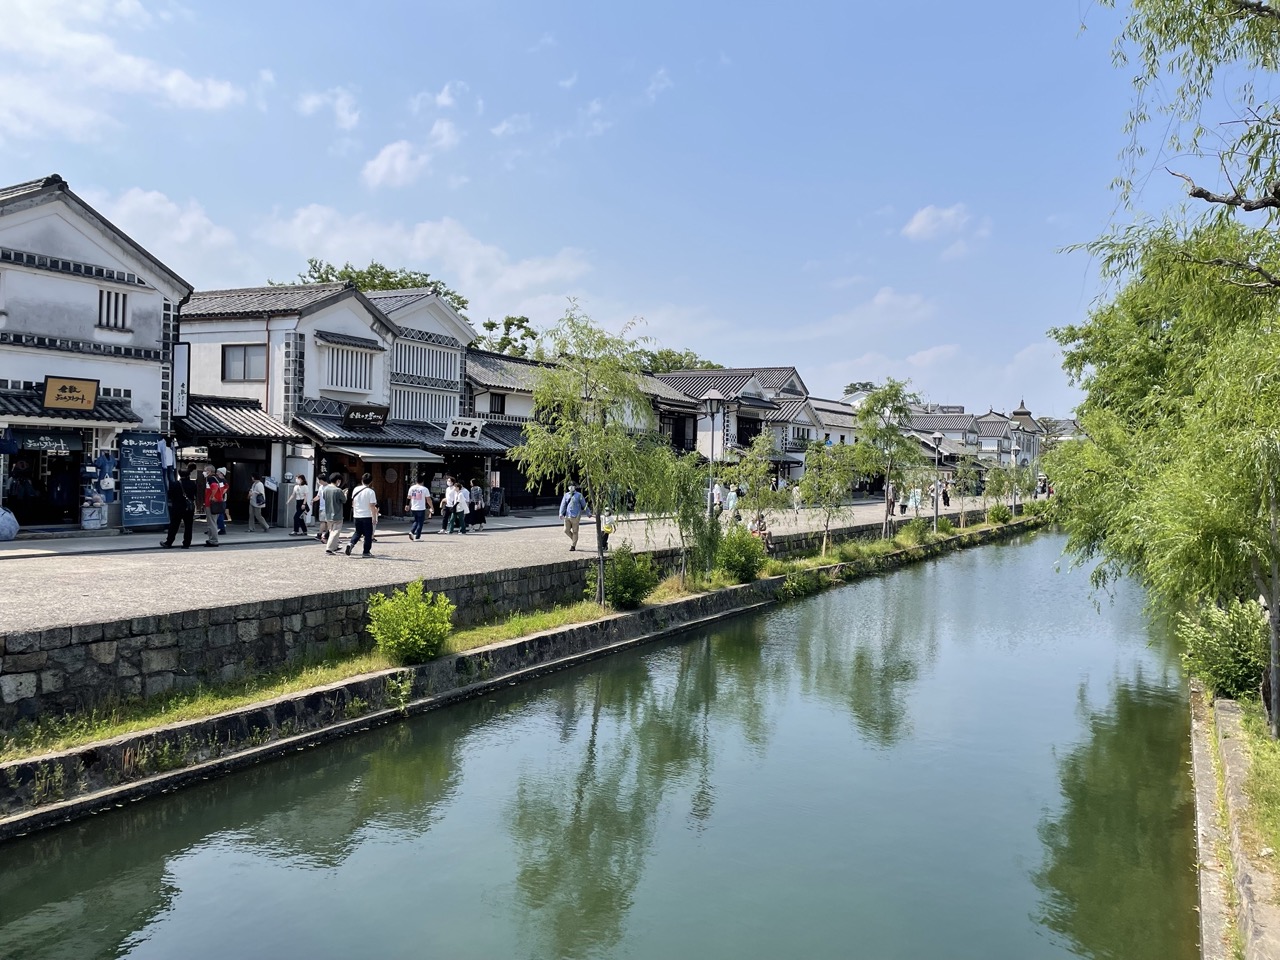 Kurashiki Bikan Historical Quarter - canal area